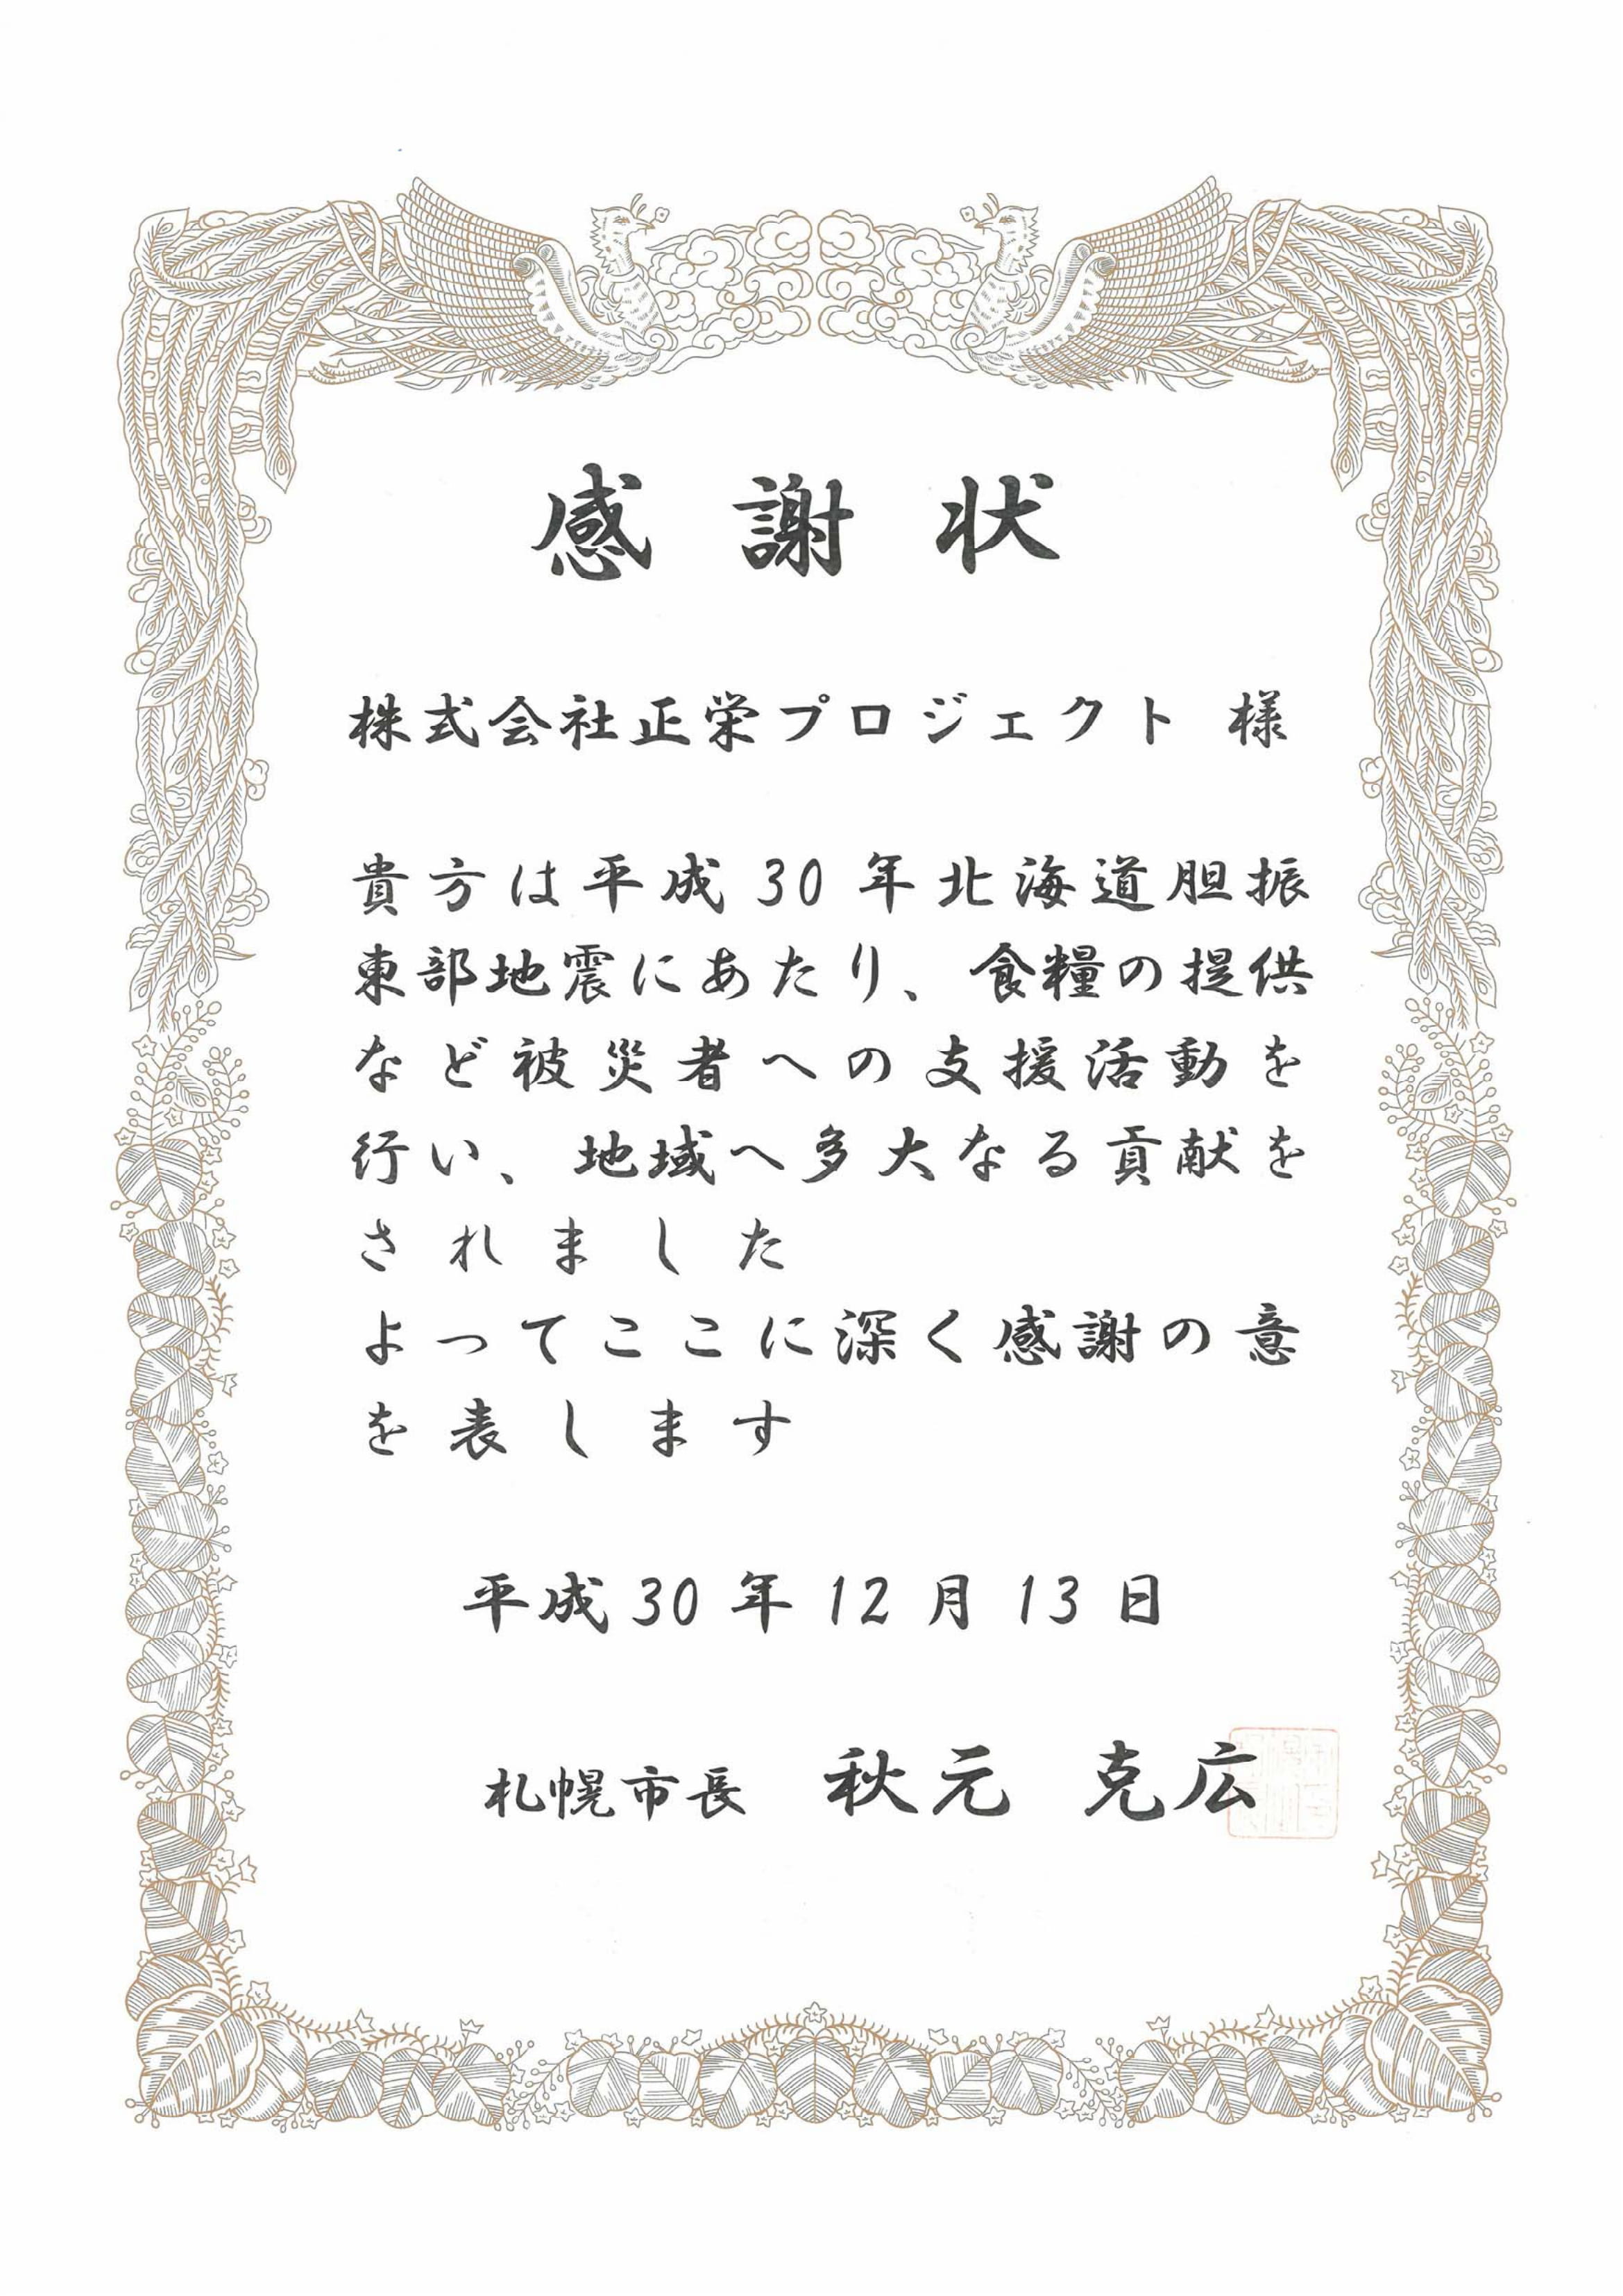 Letter_of_thanks20181213.jpg